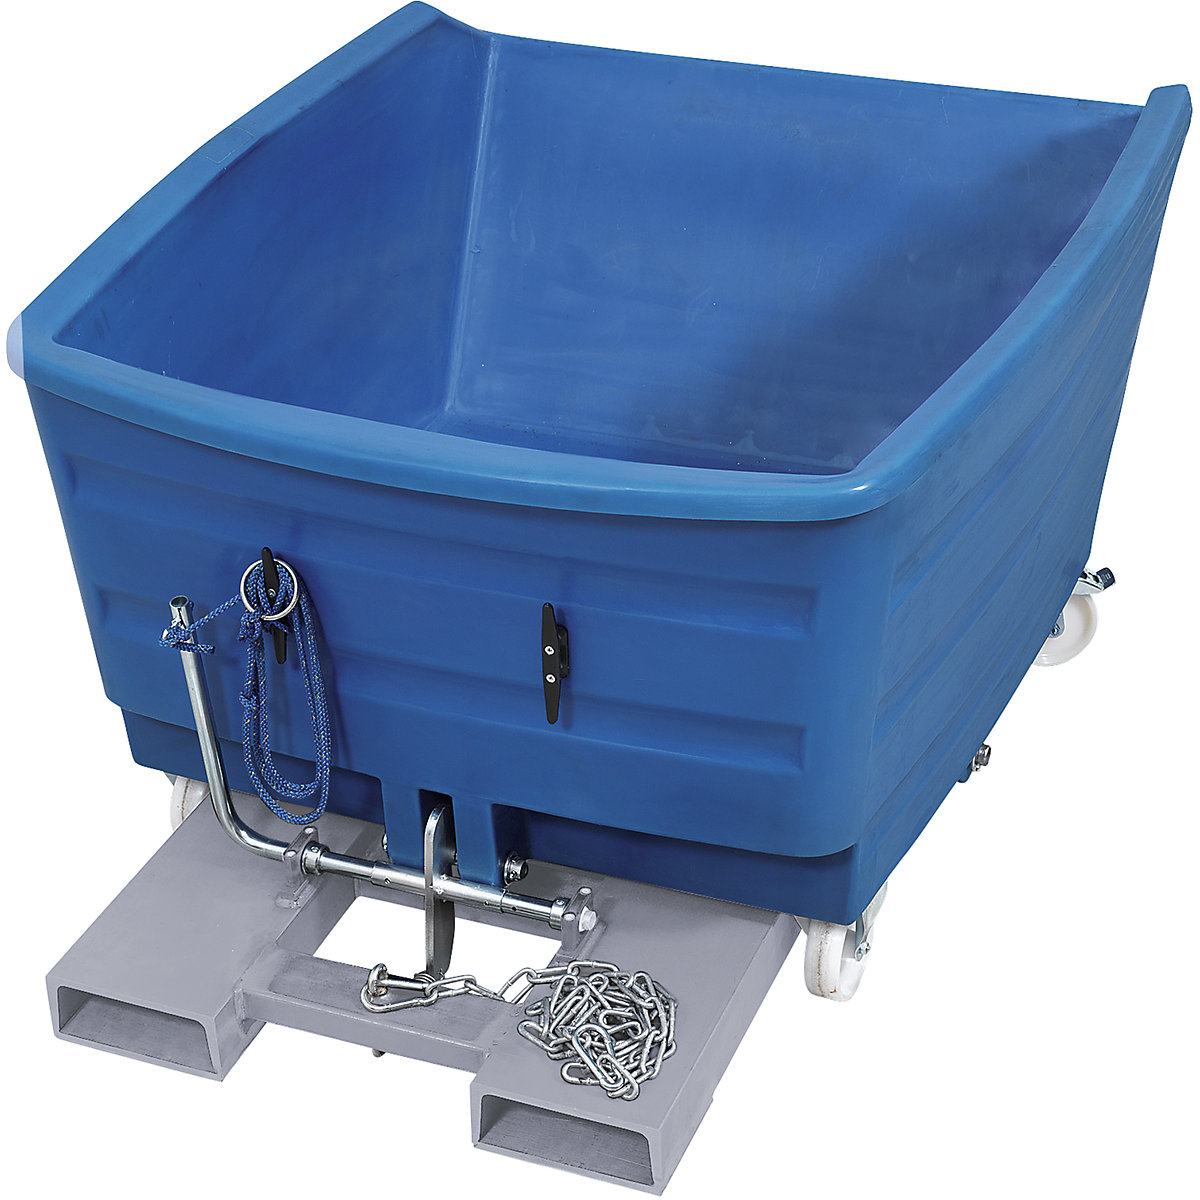 Schwerlast-Kippbehälter aus PE, Volumen 0,75 m³, blau-11